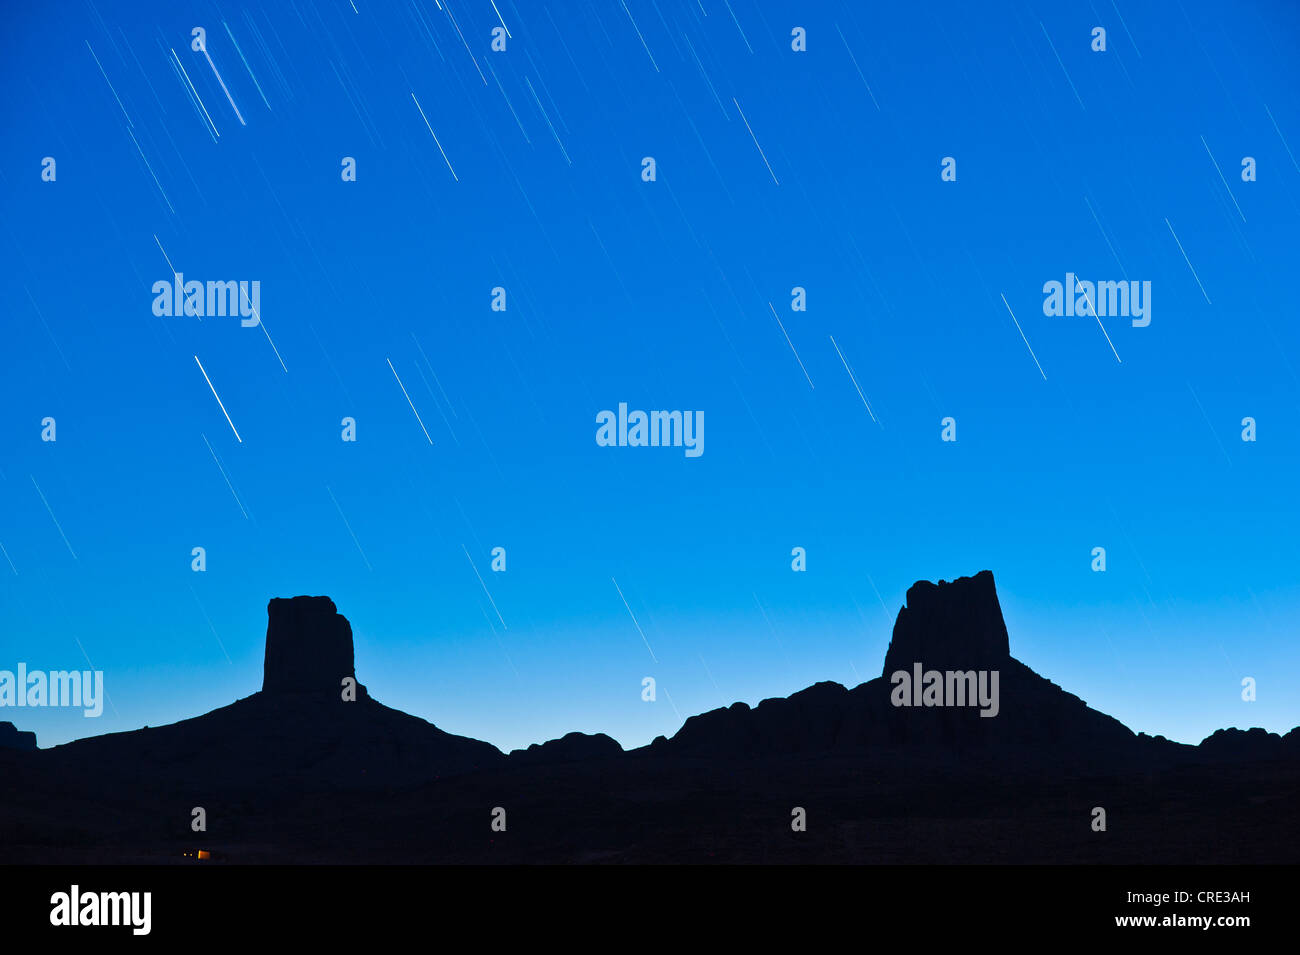 Plagado de estrellas del cielo sobre imponentes rocas, llamada Madame y Monsieur, Bab n'Ali, Djebel Sarhro montañas, sur de Marruecos. Foto de stock